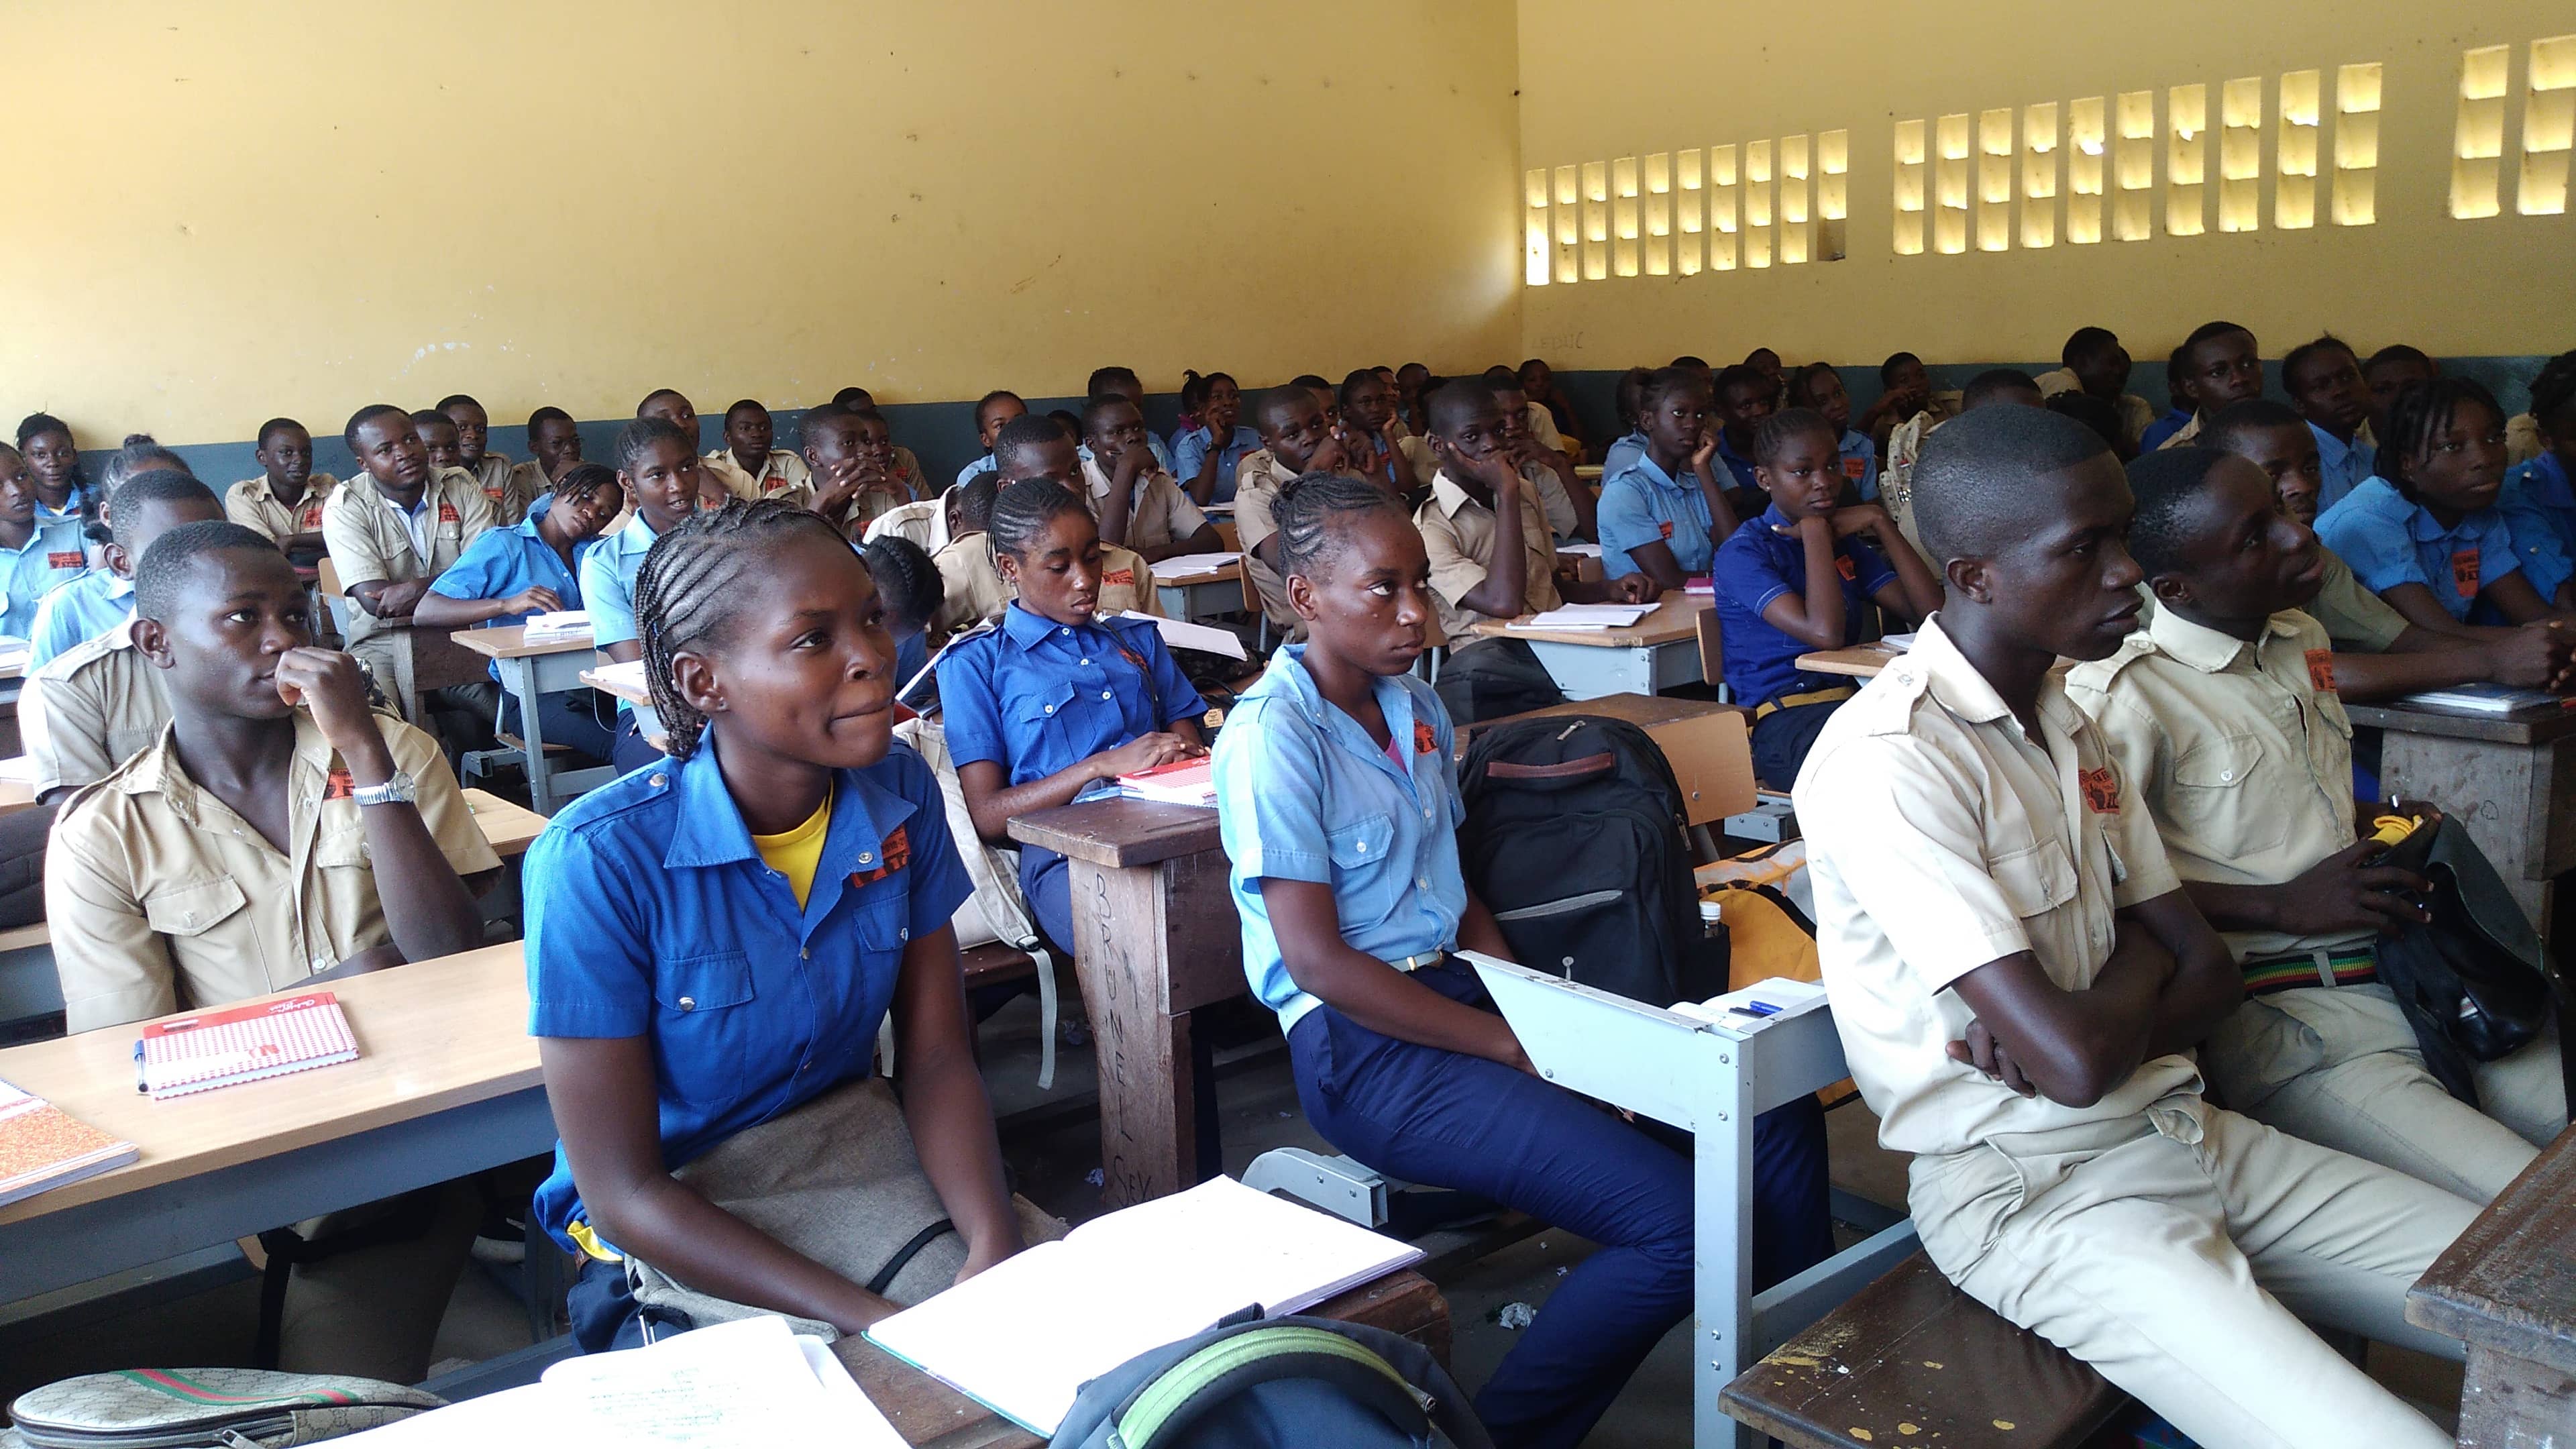  Lycéens filles et garçons en uniforme dans leur salle de classe au Congo